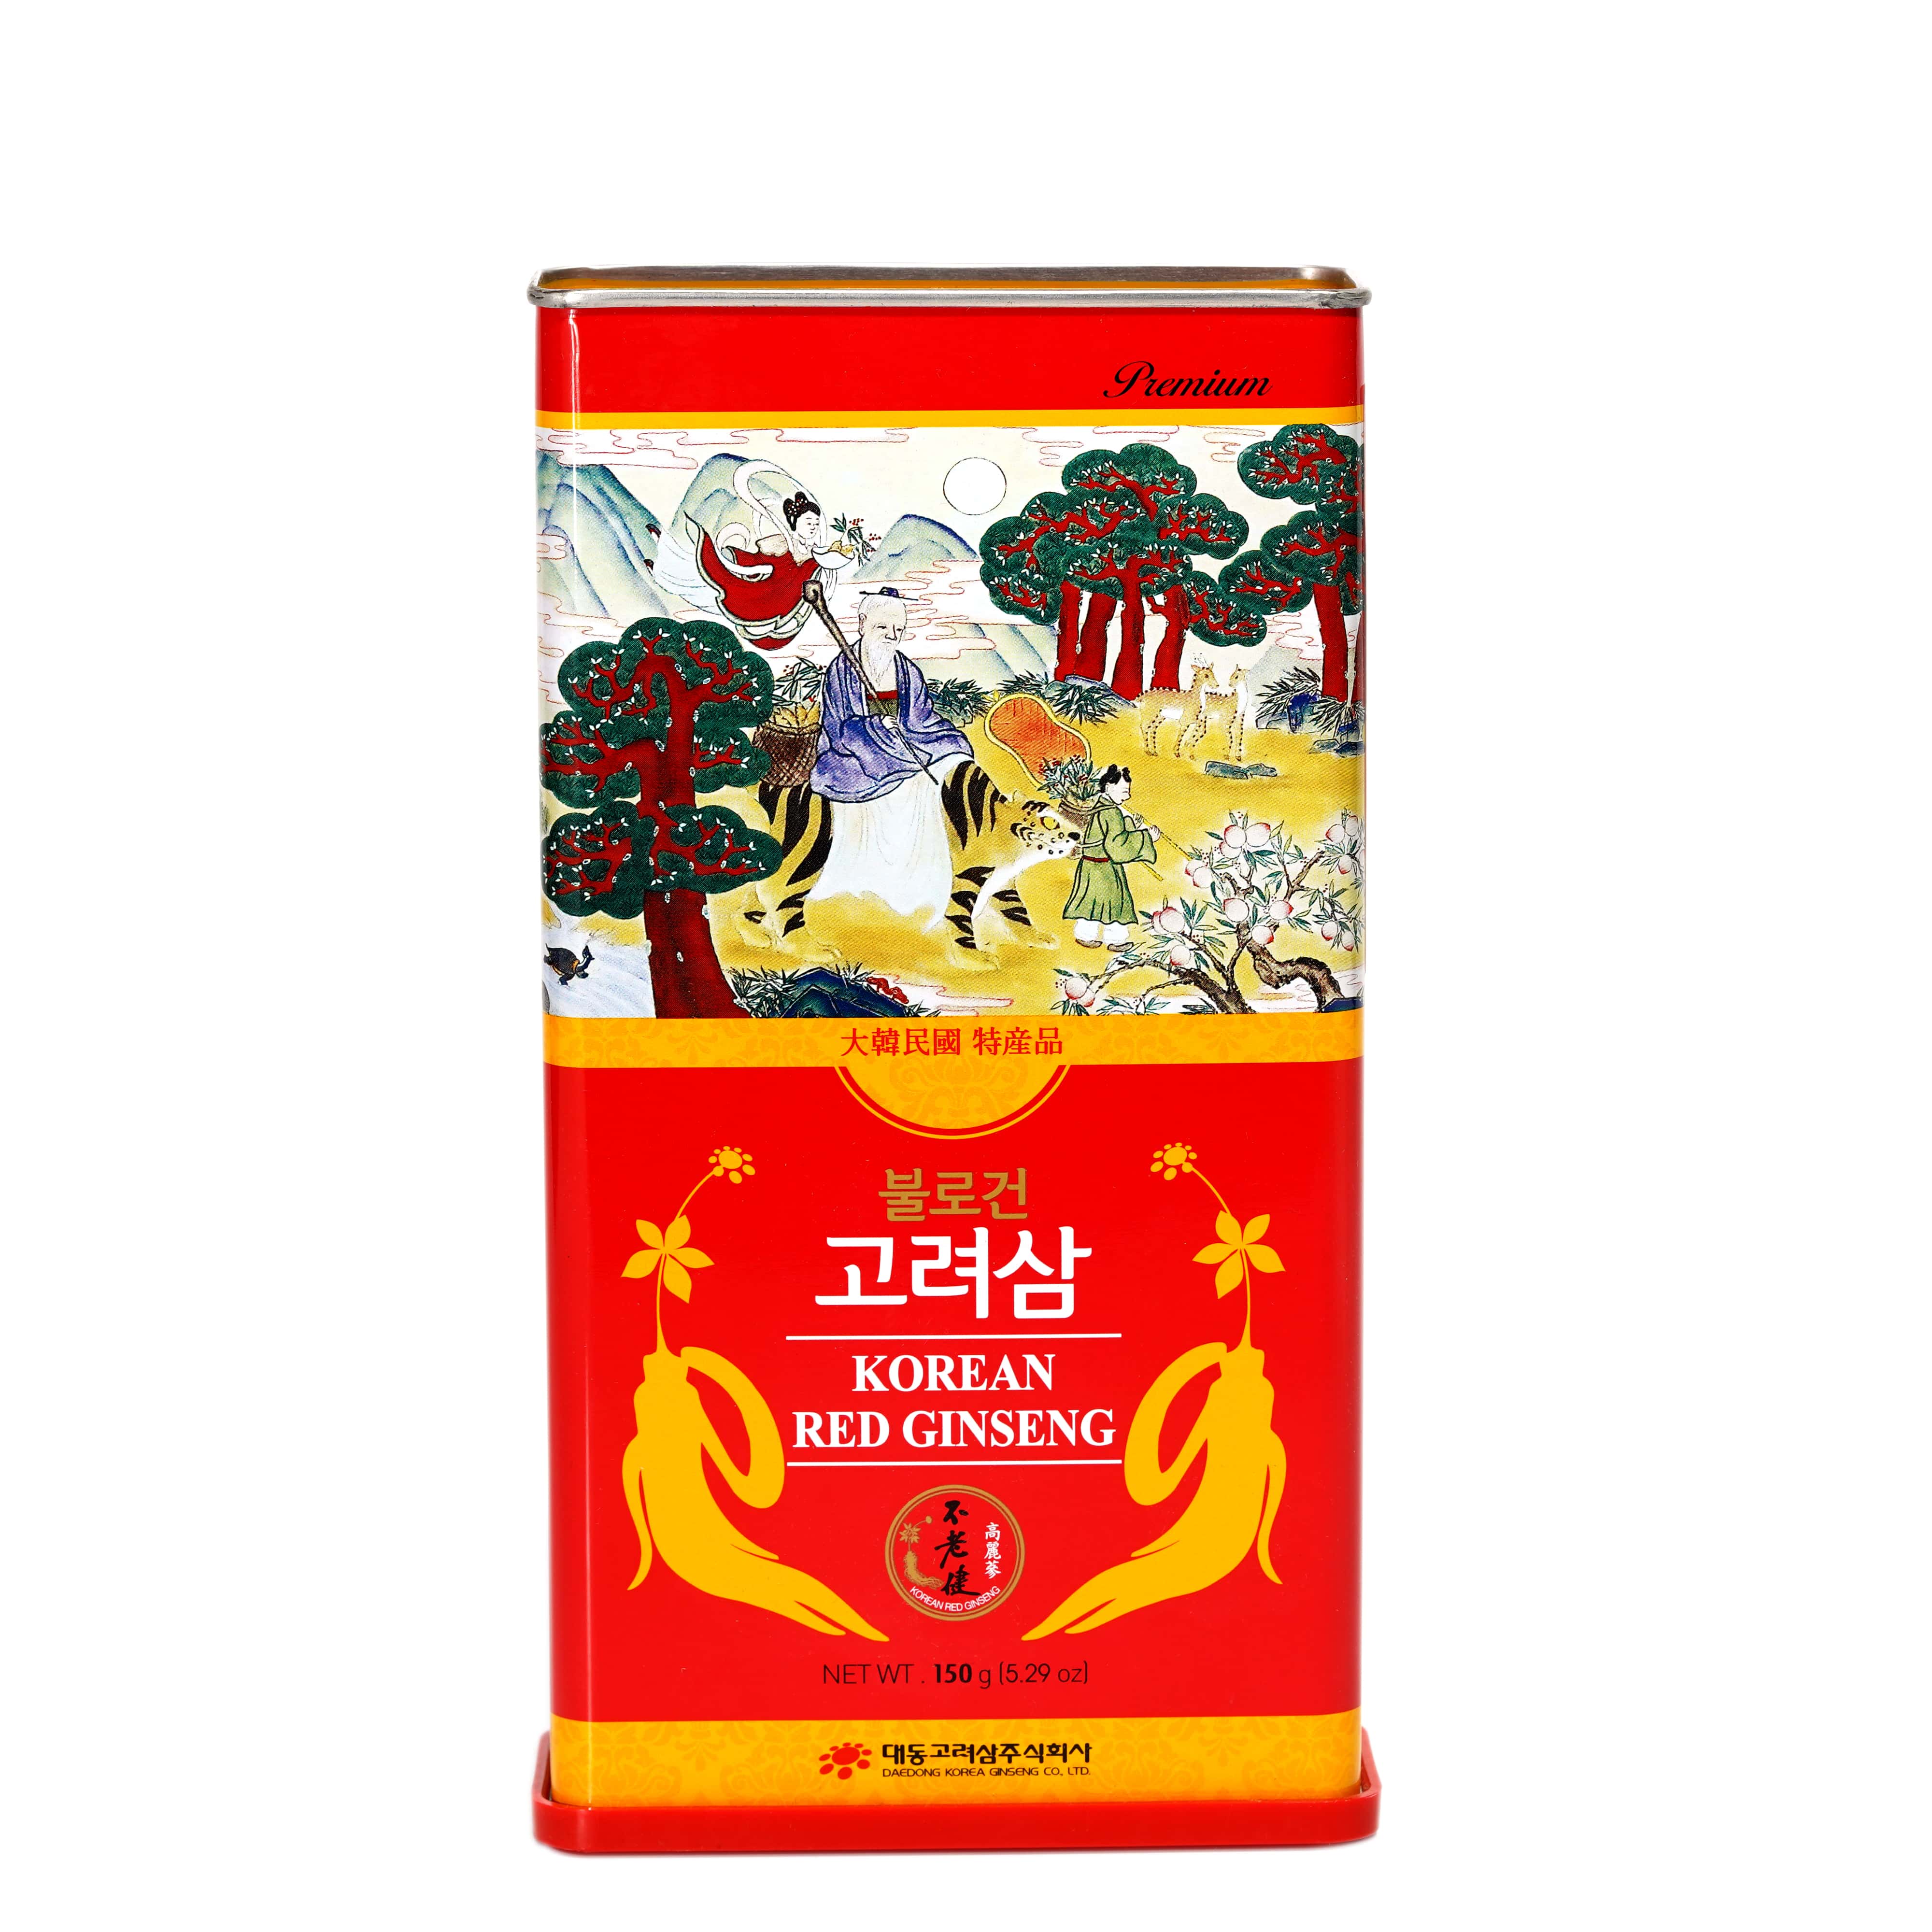 Hồng sâm củ khô Hàn Quốc Daedong Korea Ginseng 150g dòng Premium củ nhỏ (16 -25 củ) - Tăng cường trí nhớ, hỗ trợ giảm mỡ máu, phòng ngừa tiểu đường, huyết áp